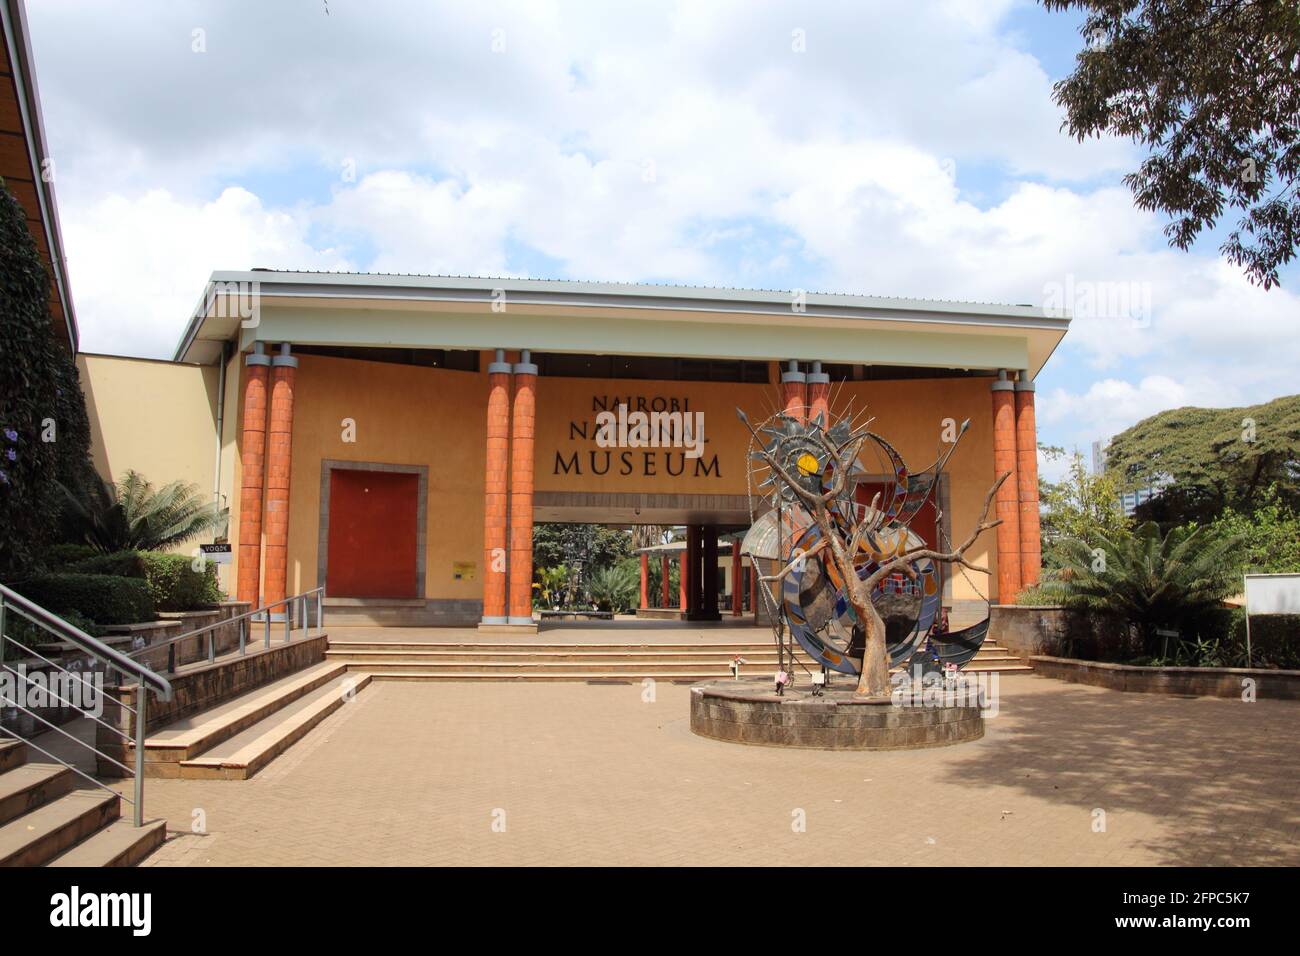 KENYA, NAIROBI - JULY 29, 2018; Entrance to the Nairobi National Museum Stock Photo